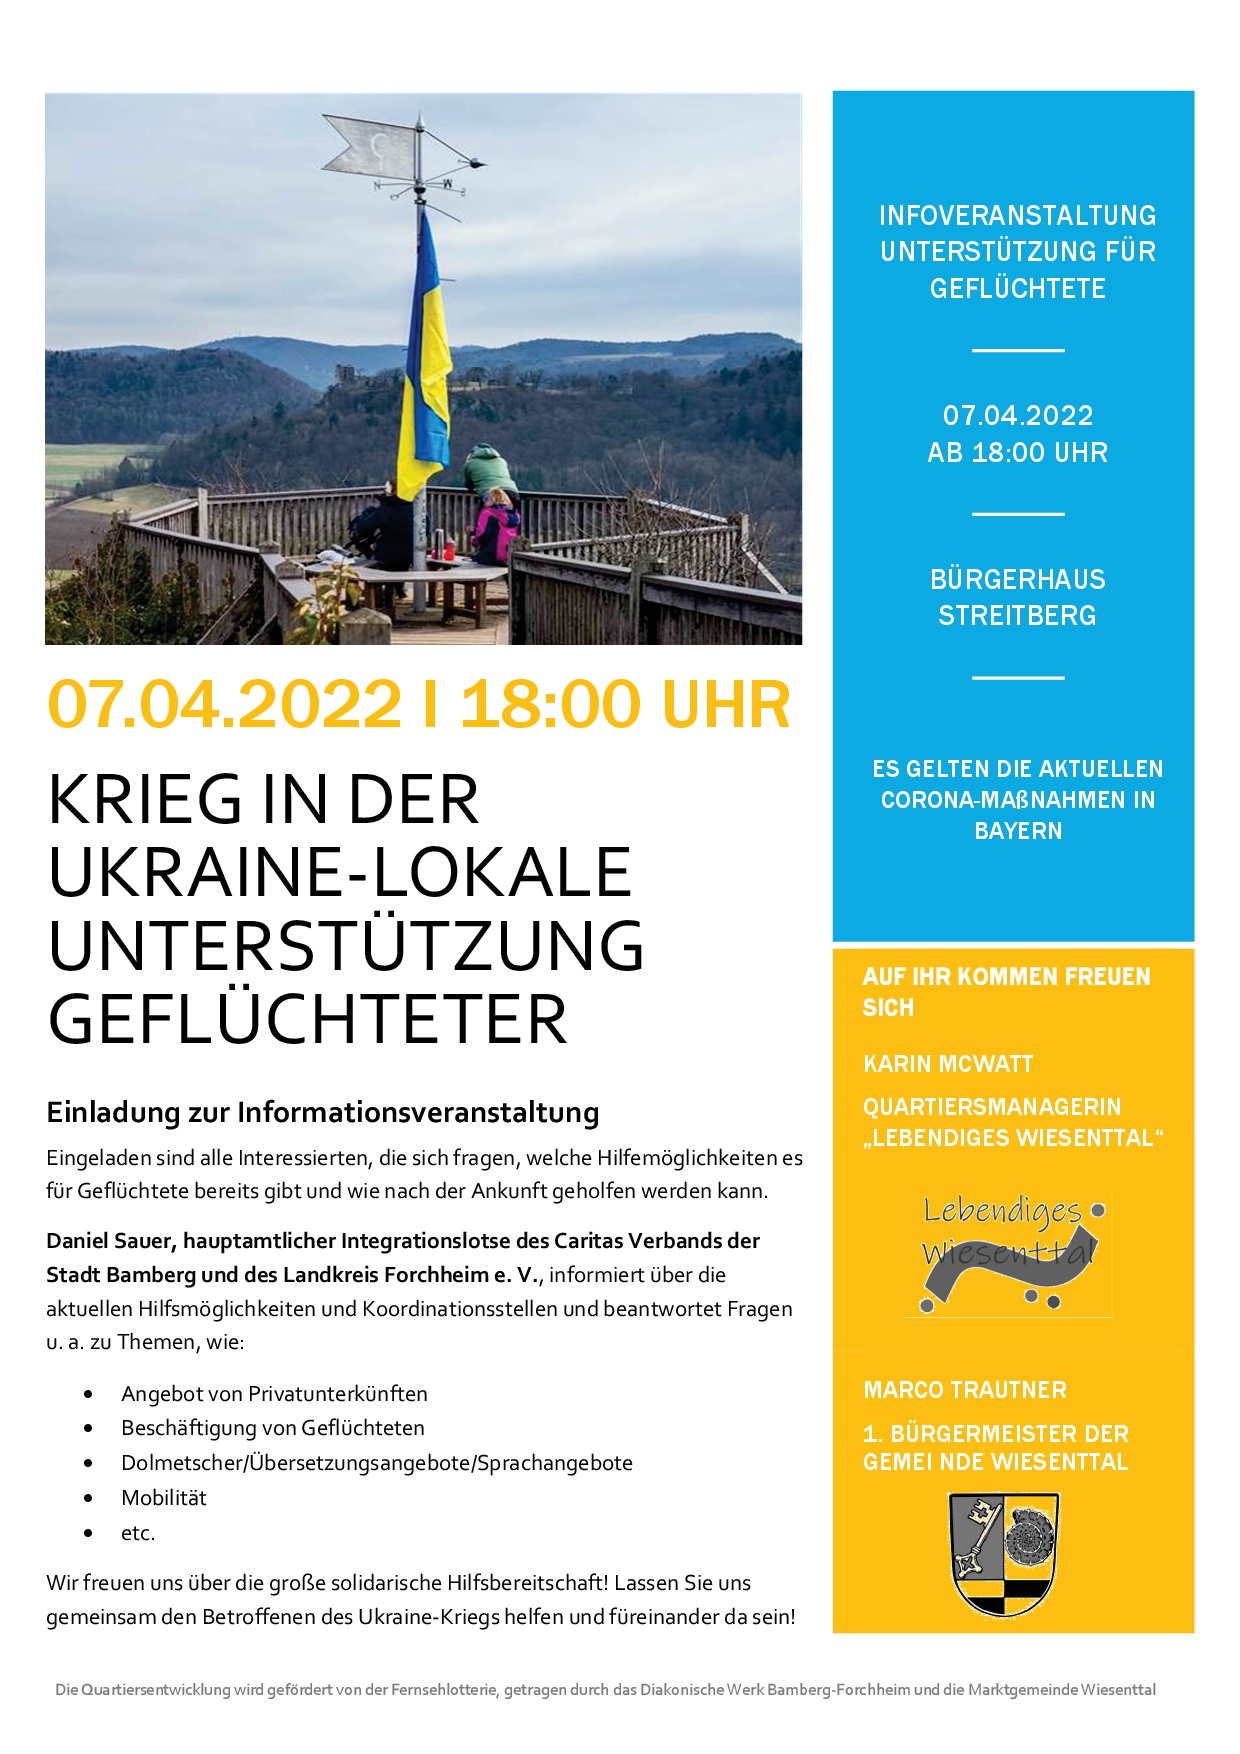 Info-Veranstaltung: Krieg in der Ukraine – lokale Unterstützung Geflüchteter in Wiesenttal